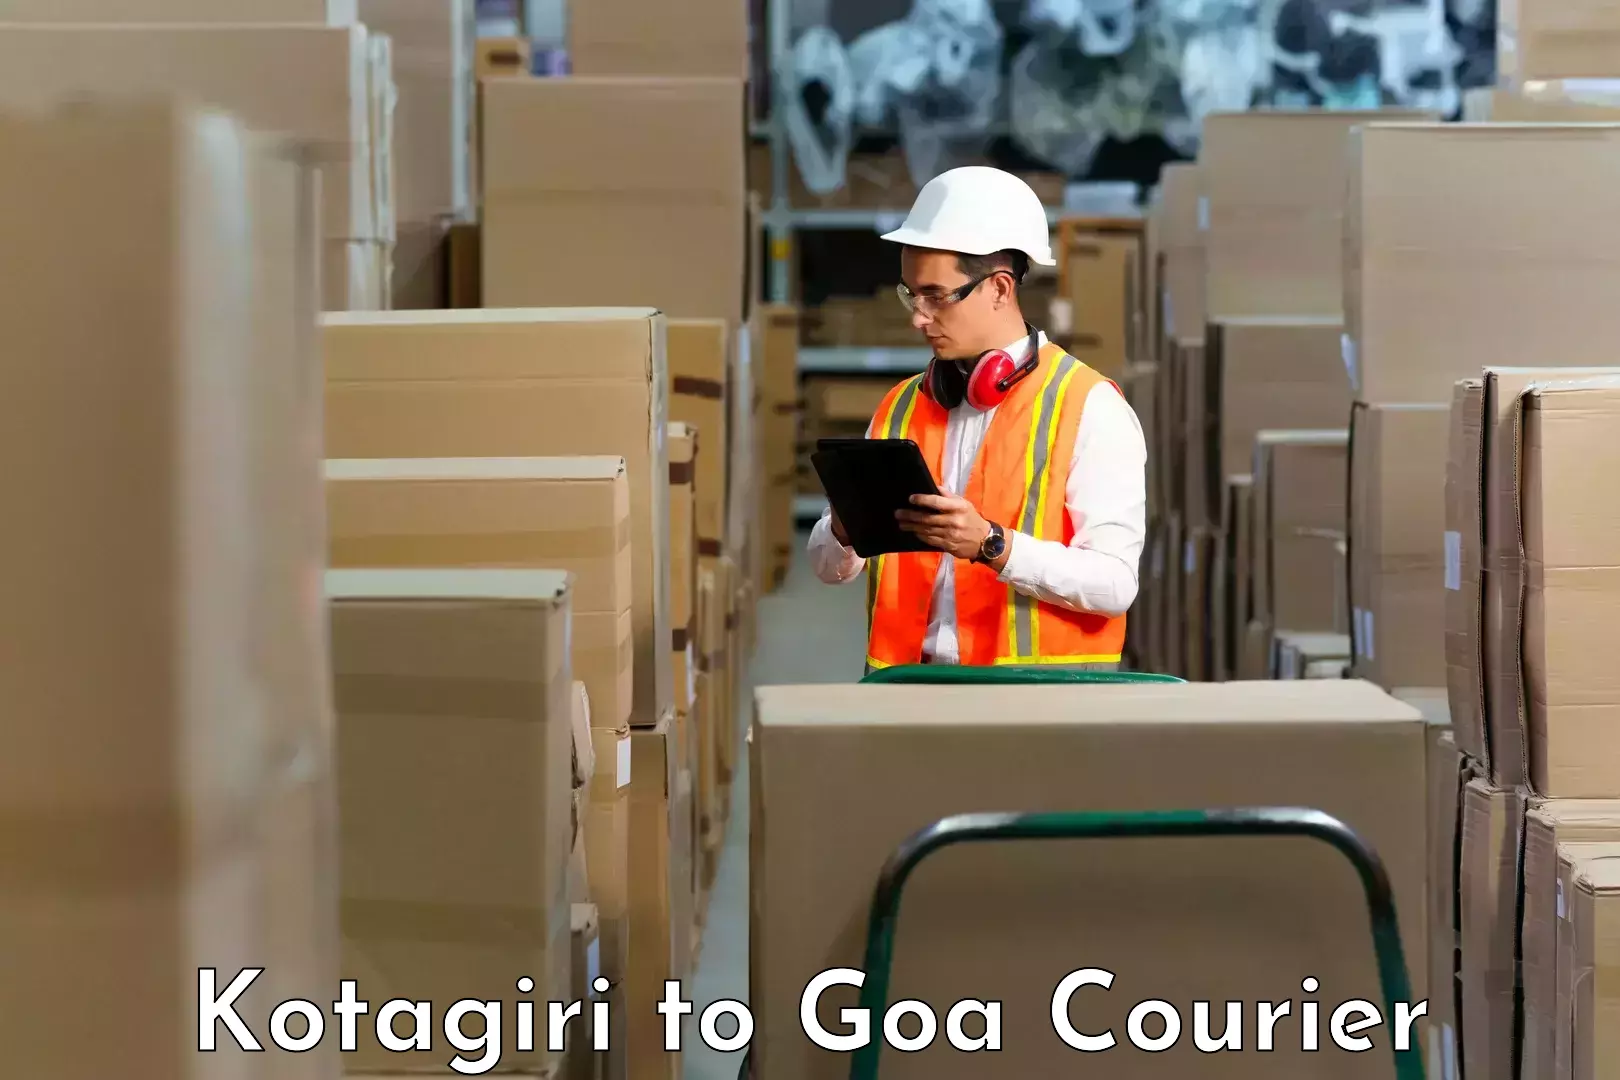 Online courier booking Kotagiri to NIT Goa